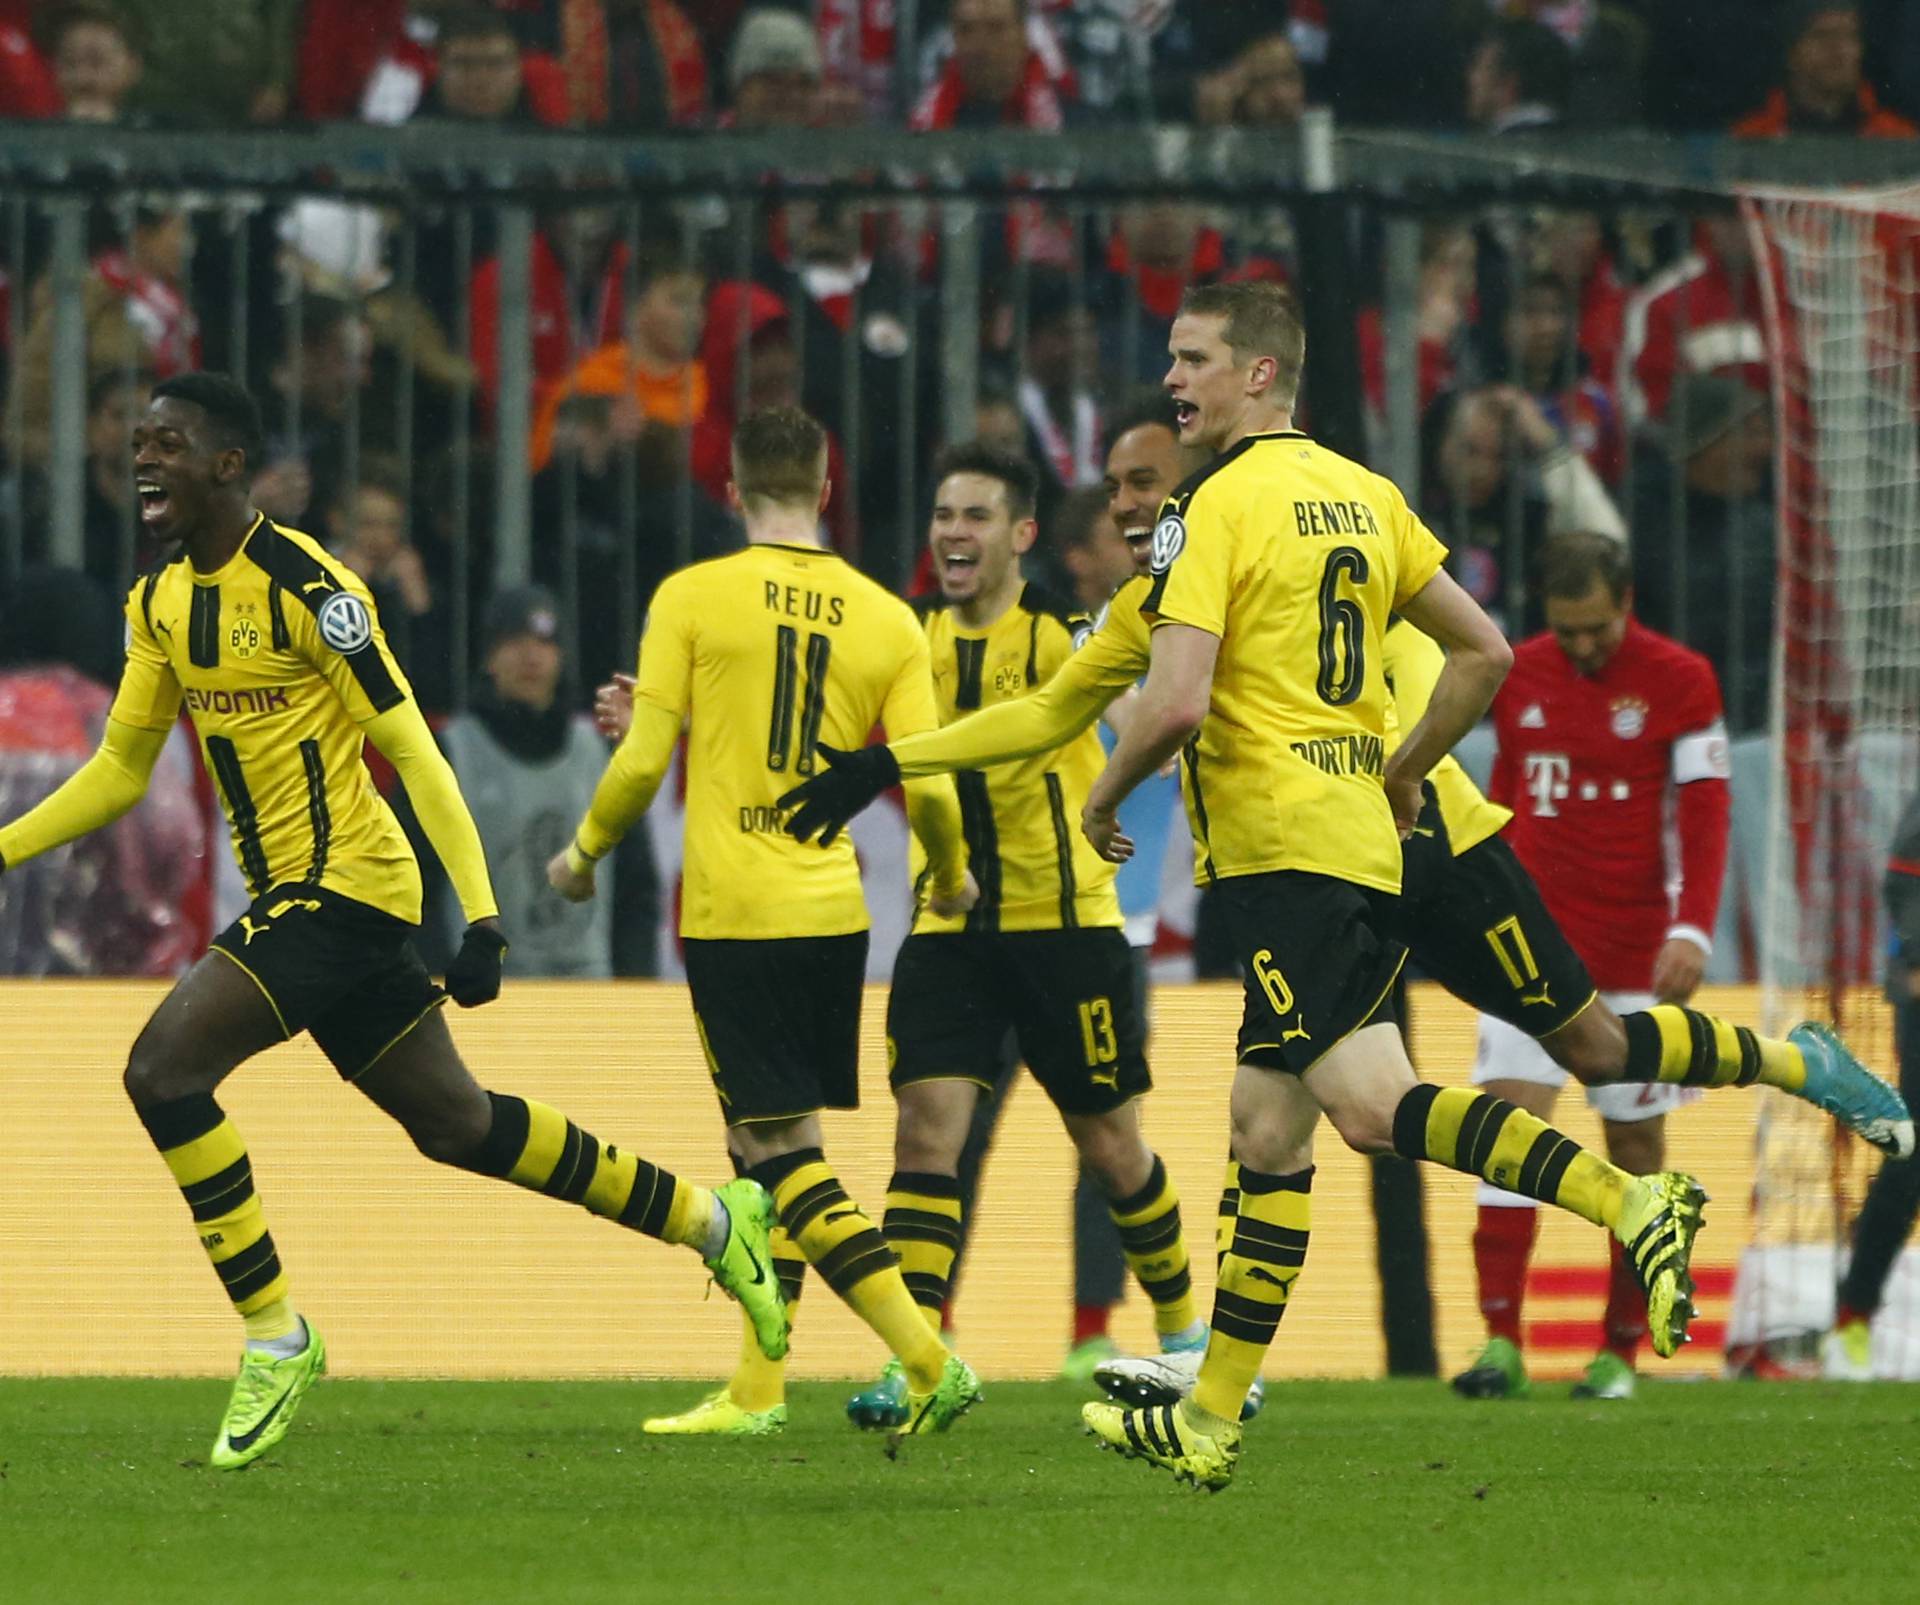 Borussia Dortmund's Ousmane Dembele celebrates scoring their third goal with team mates